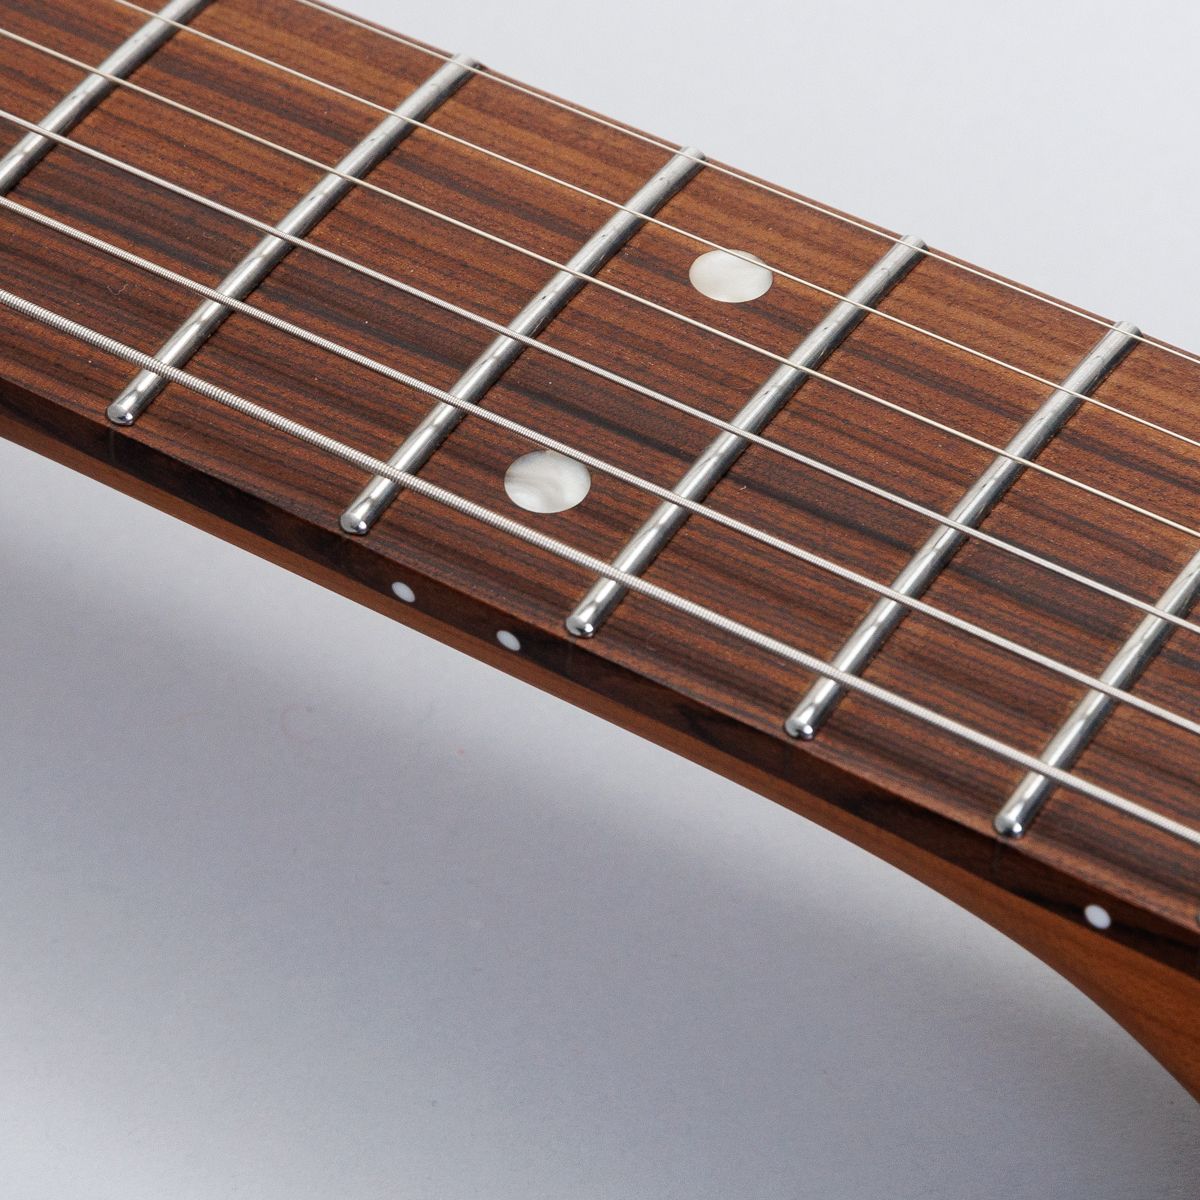 HST/SSH-Performance Vintage White エレキギター初心者12点セット 【マーシャルアンプ付き】ストラトキャスタータイプ ローステッドメイプル ホワイト 白 関連画像